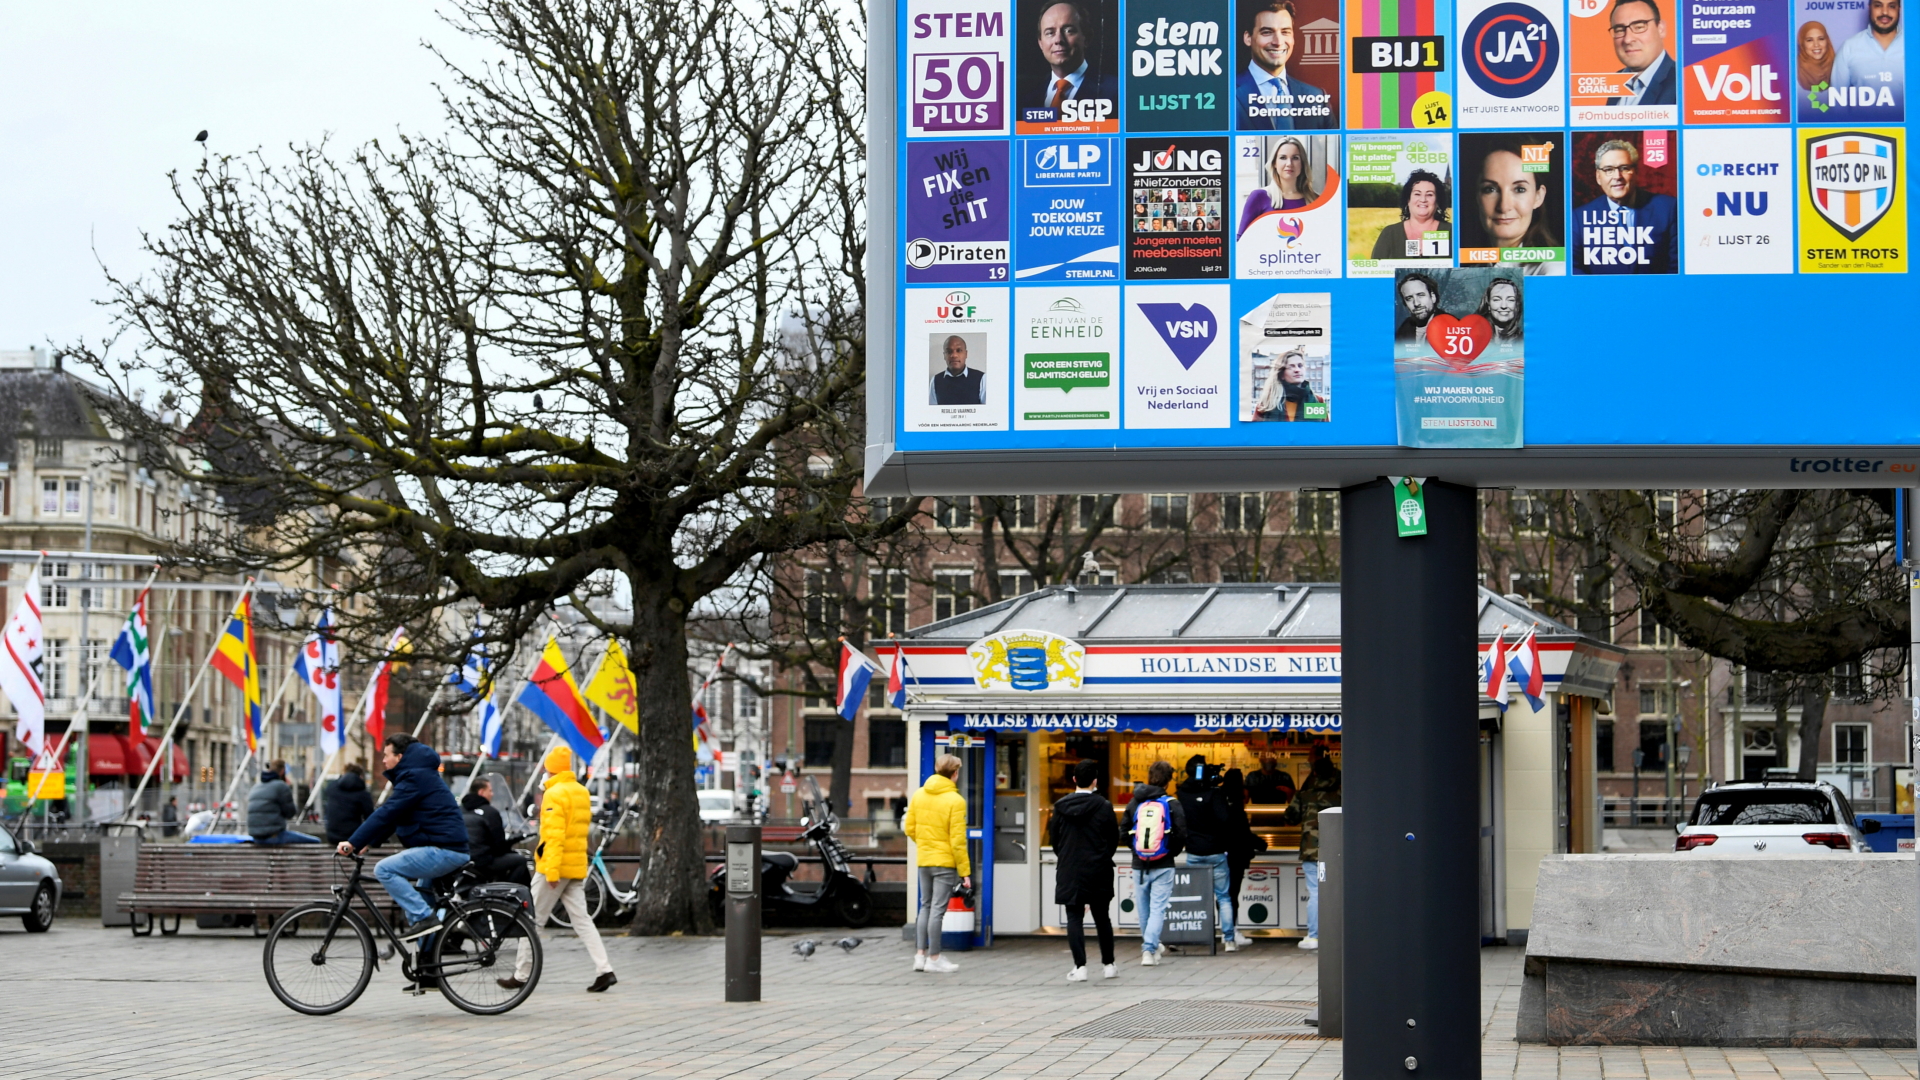 Eine Informationstafel zur Parlamentswahl vor einem Imbiss in Den Haag. | REUTERS